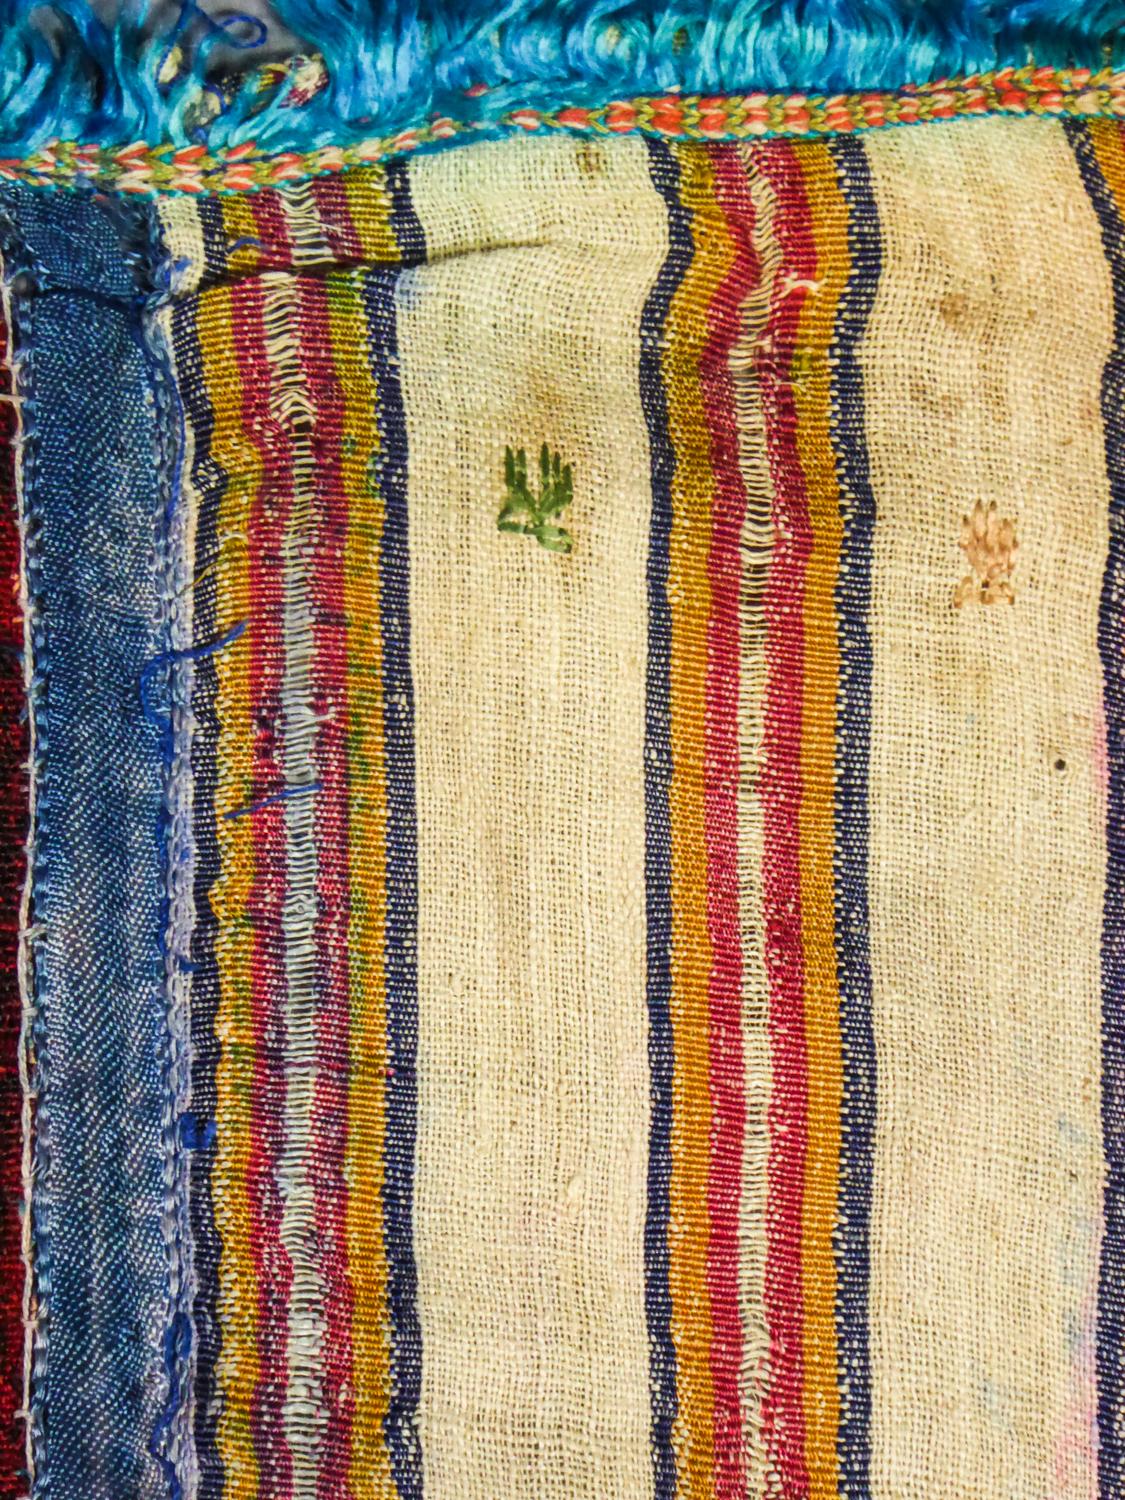 Ceremonial Silk Ribbons Shawl -Tunisia Circa 1900/1950  2